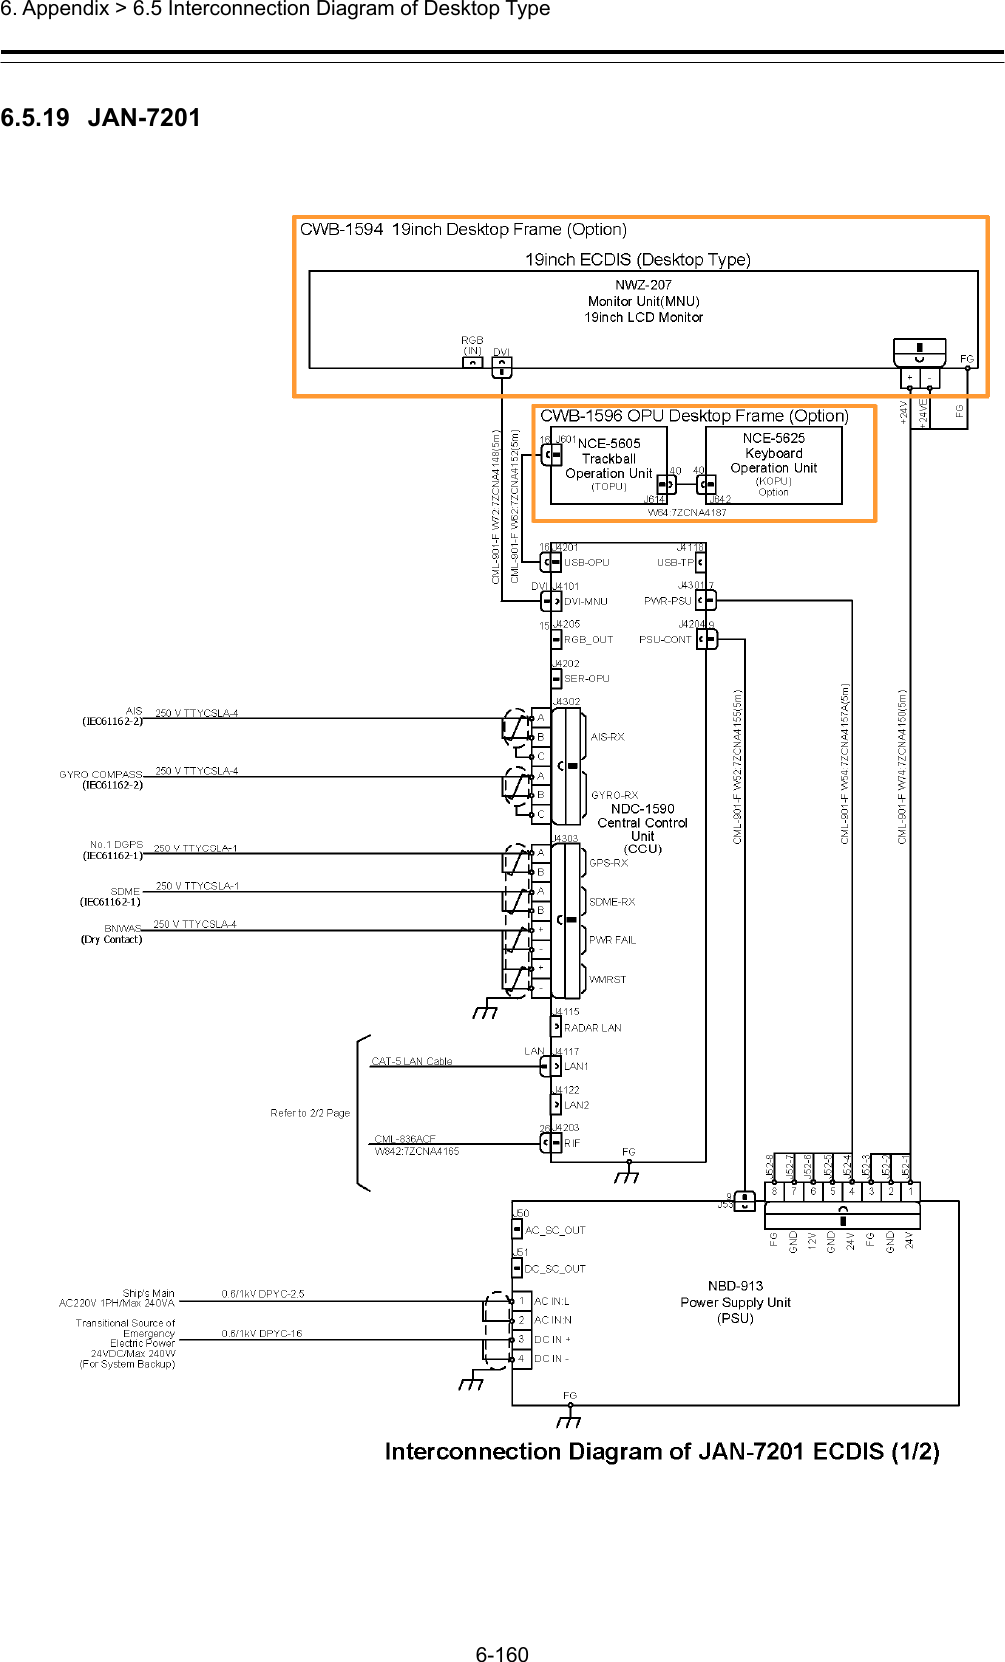  6. Appendix &gt; 6.5 Interconnection Diagram of Desktop Type 6-160  6.5.19  JAN-7201 